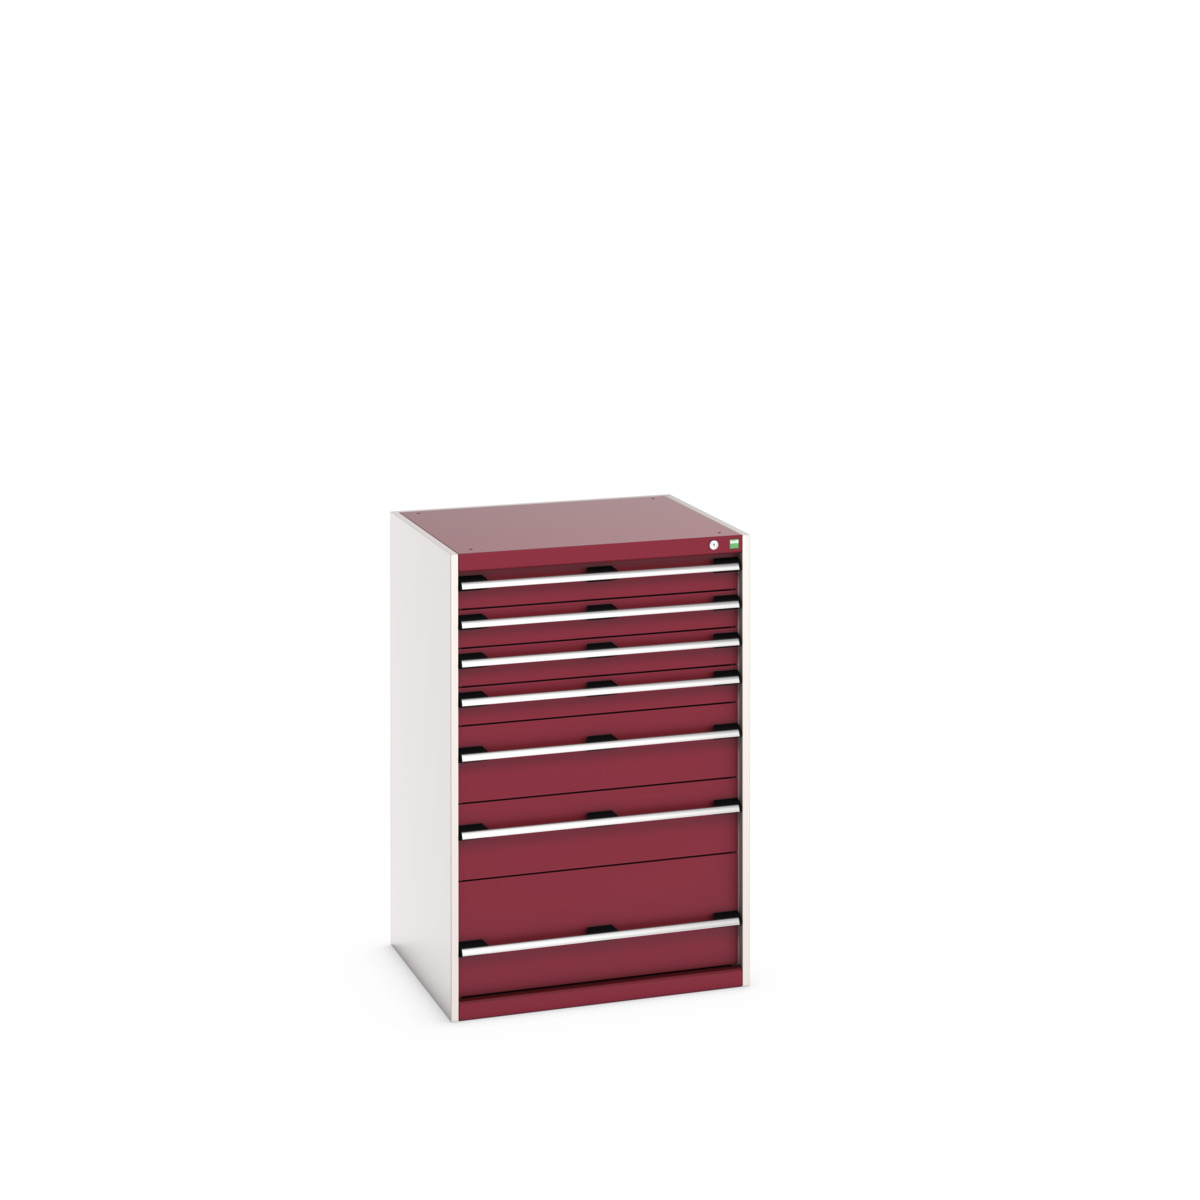 40028032.24V - cubio drawer cabinet